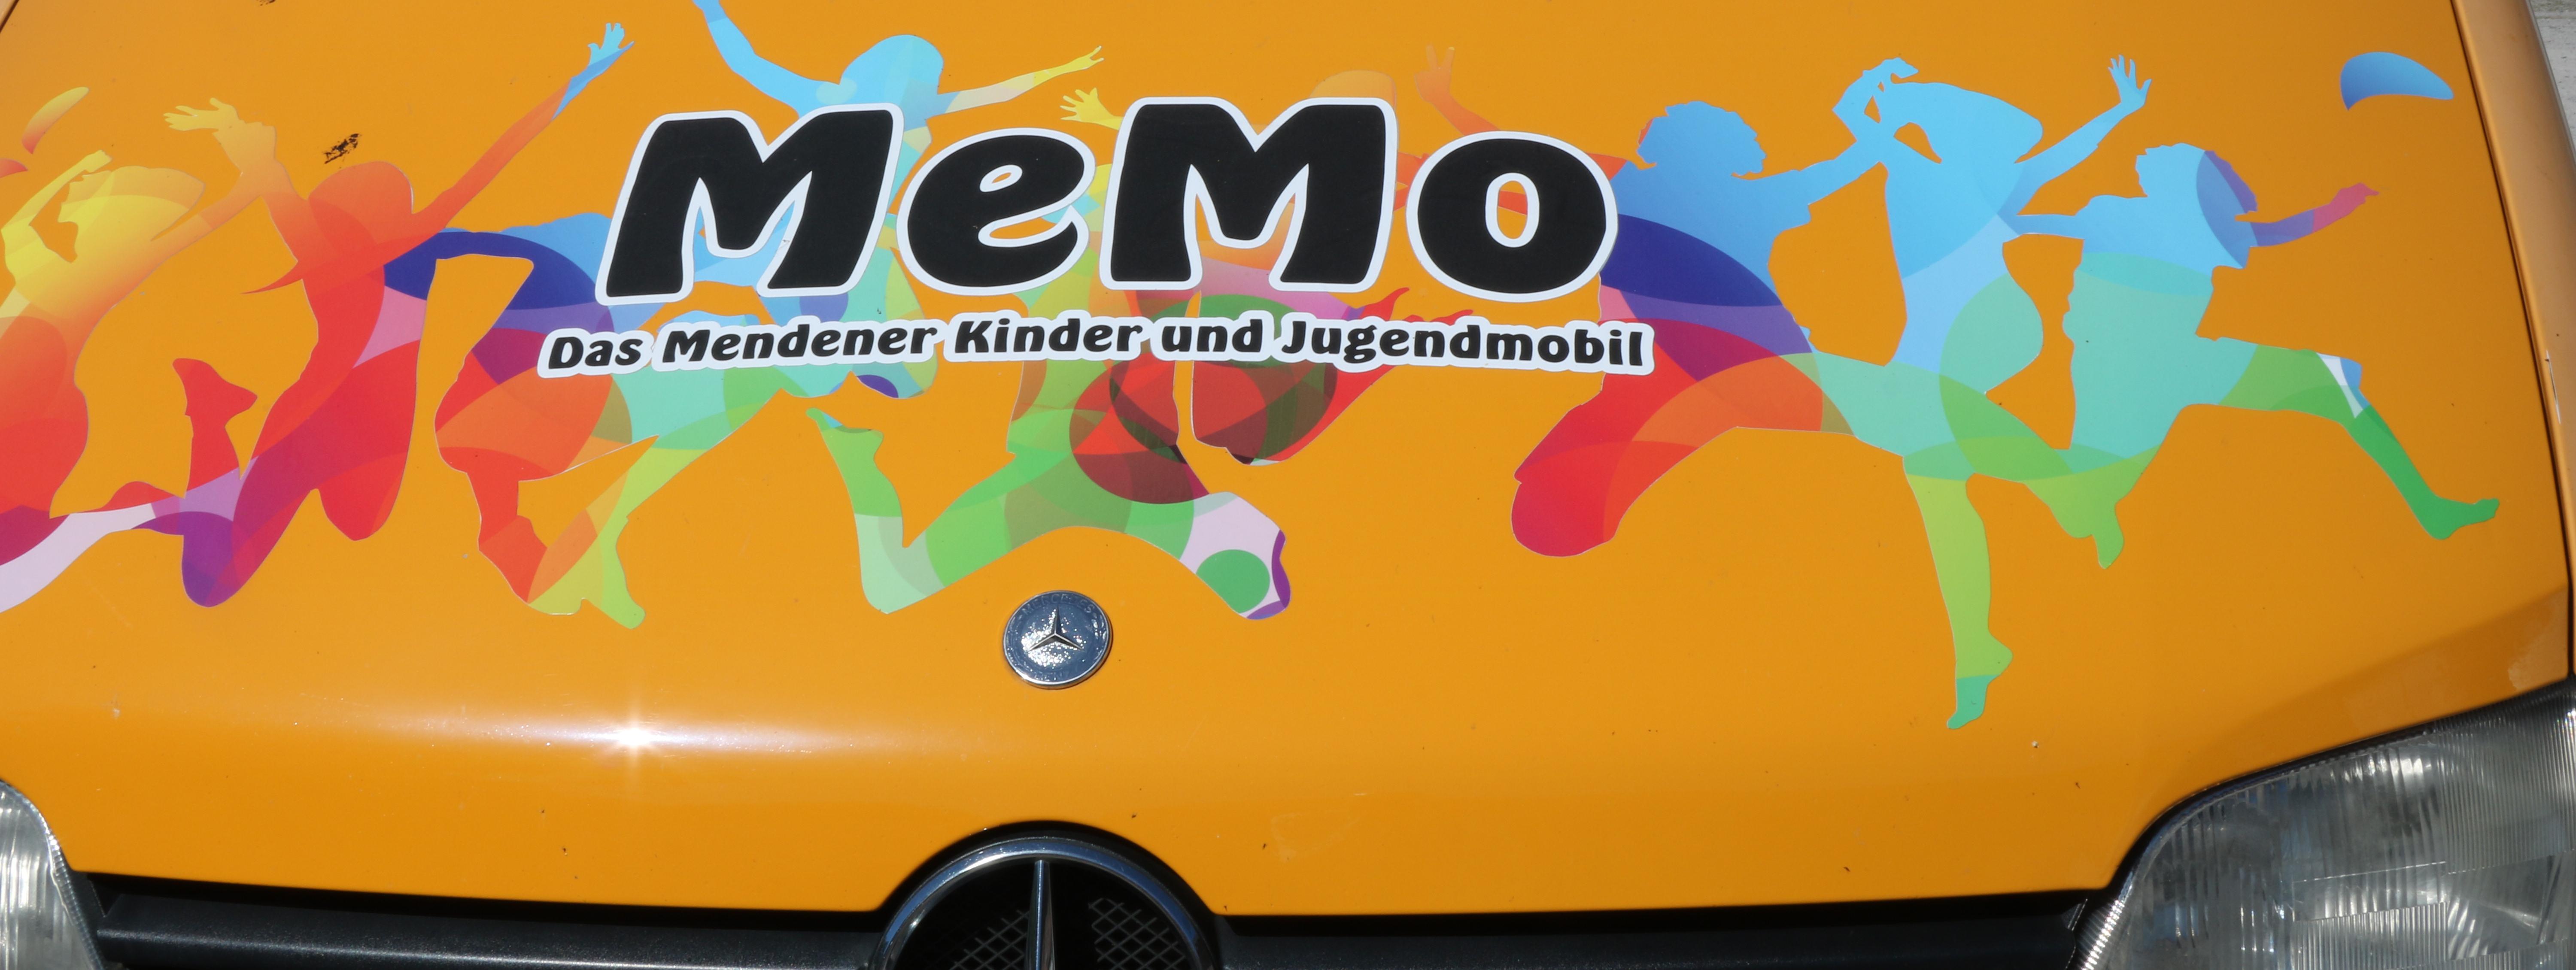 Das MEMO ist ein großer gelber Mercedes Sprinter. Auf dem Bus sind die Logos der Stadtteiltreffs und bunte Silhouetten von tanzenden Menschen geklebt worden.